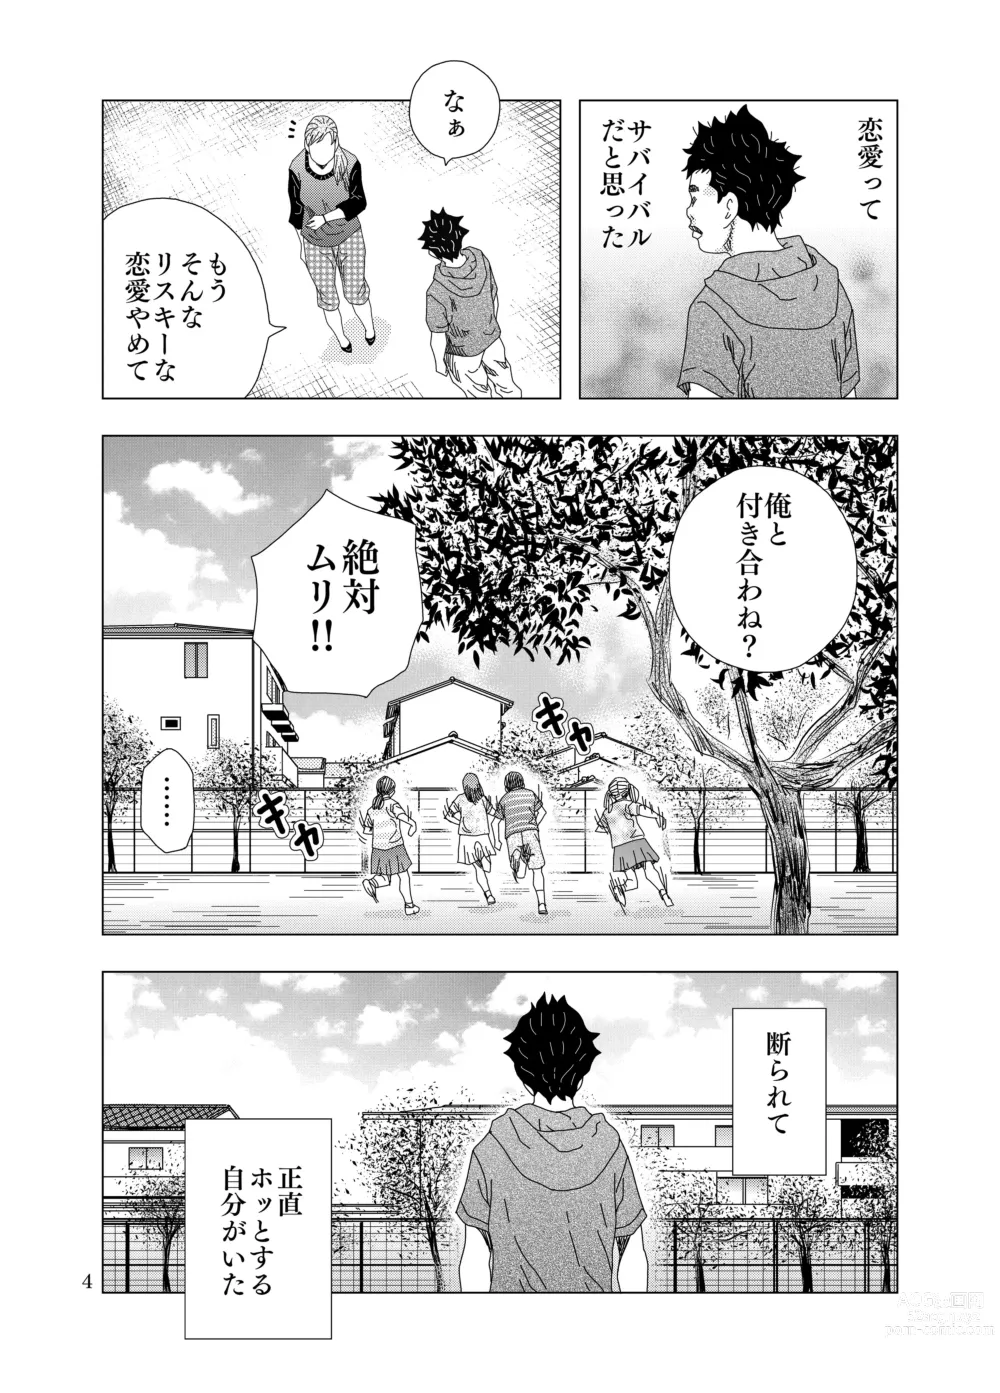 Page 11 of doujinshi Zurui Hito-tachi